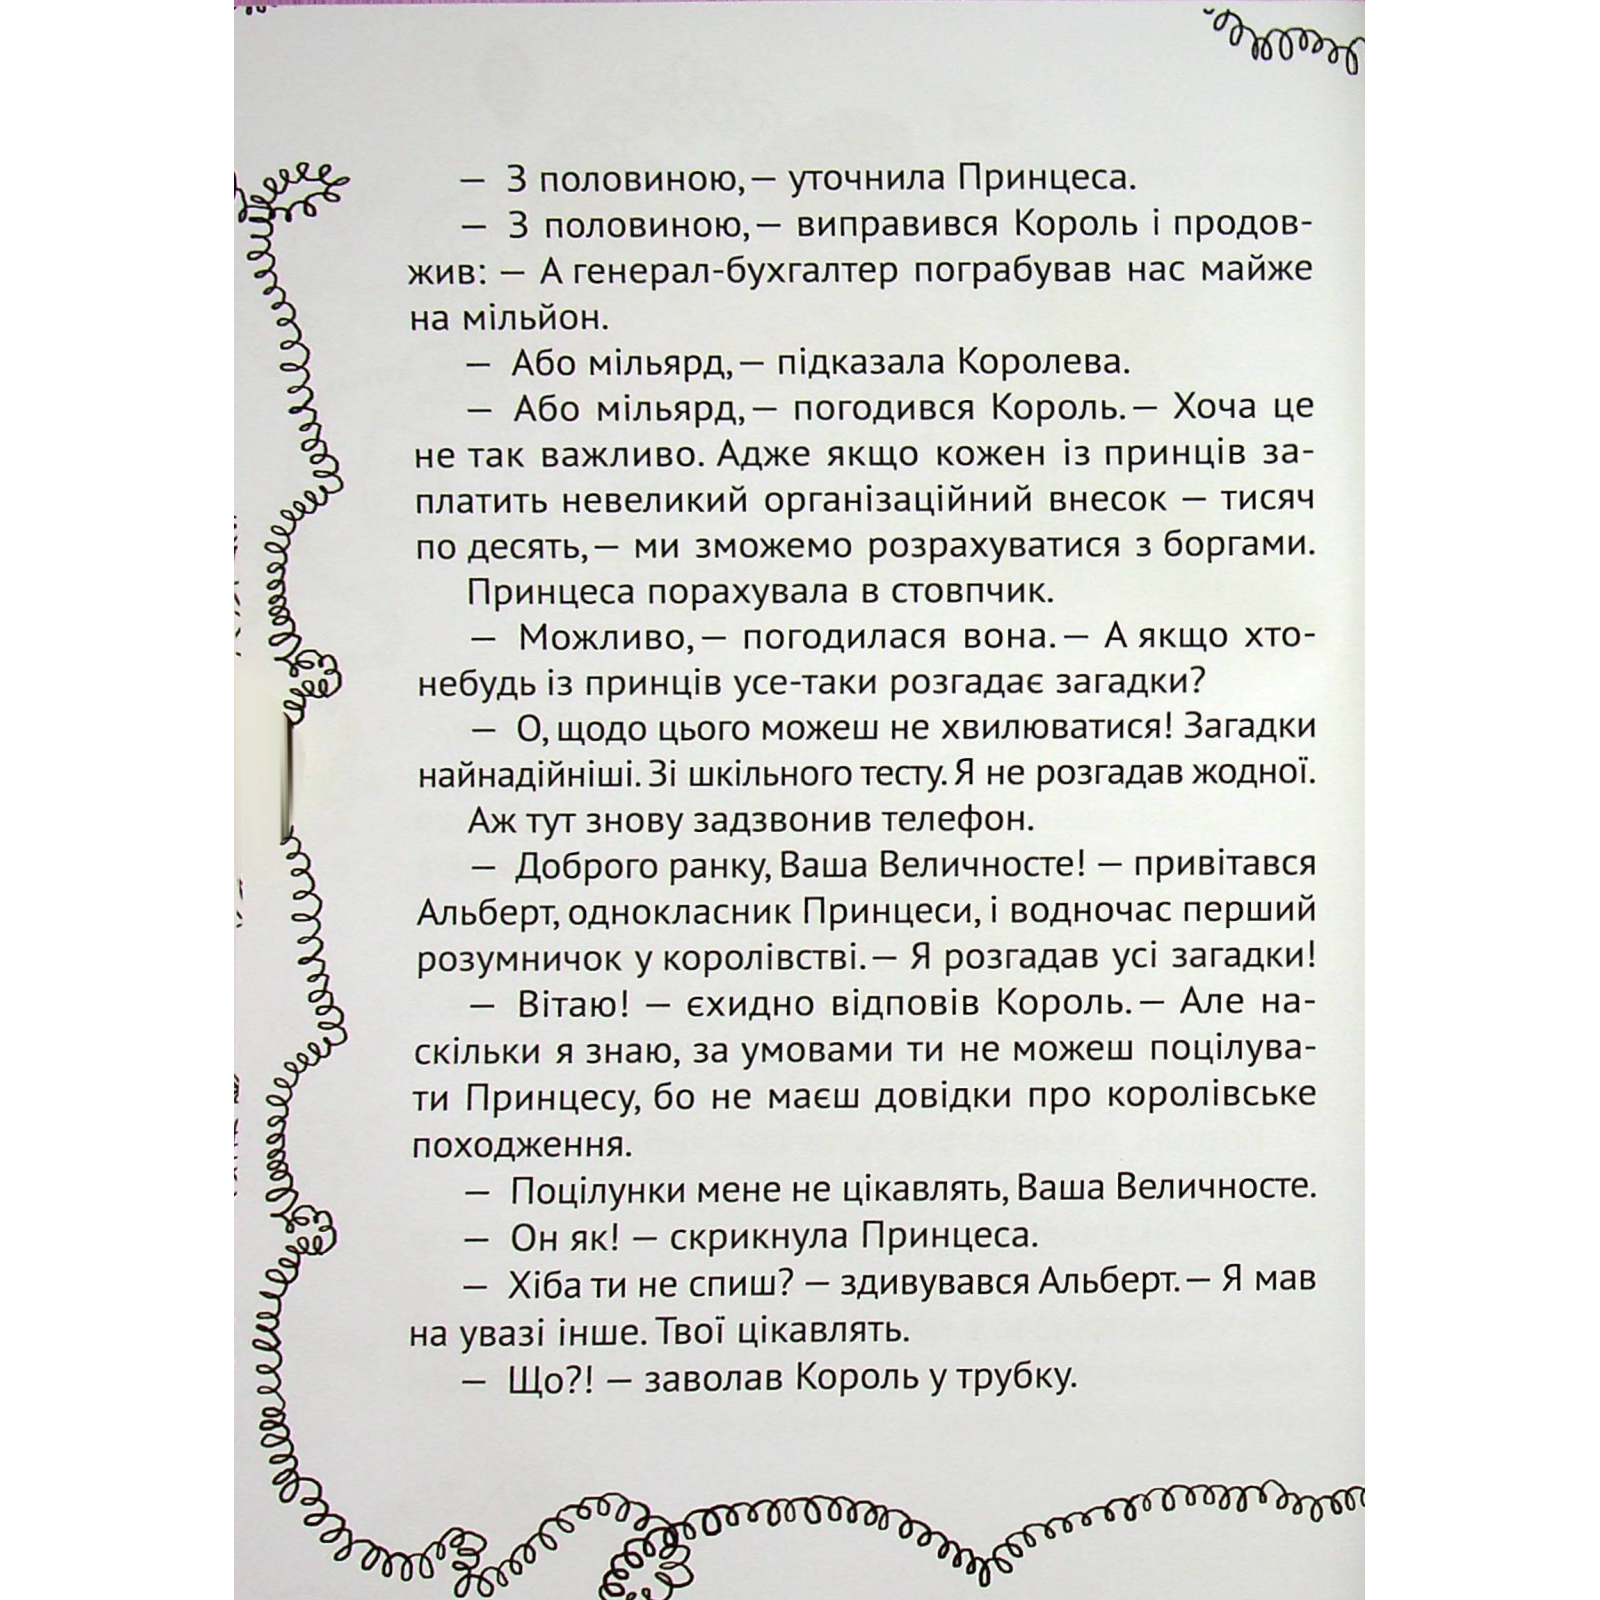 Книга Кожен може поцілувати принцесу - Кузько Кузякін Vivat (9789669821928) изображение 5